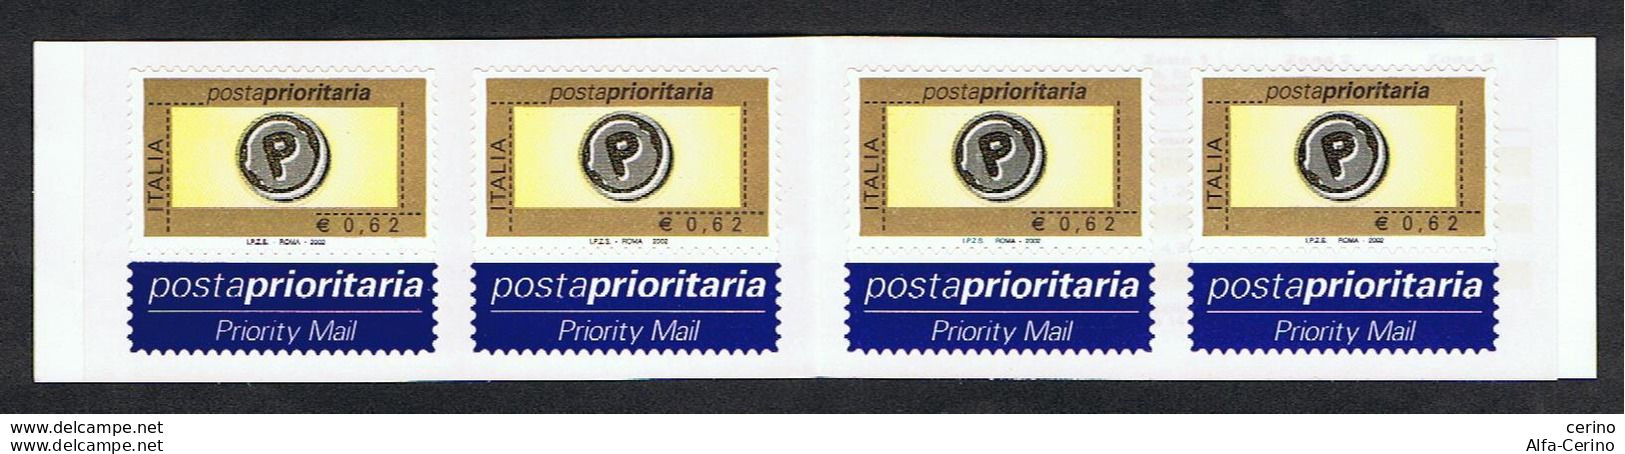 REPUBBLICA:  2002  LIBRETTO  POSTA  PRIORITARIA  -  €. 0,62 X 4  POLICROMO  -  SASS. 24 - Booklets